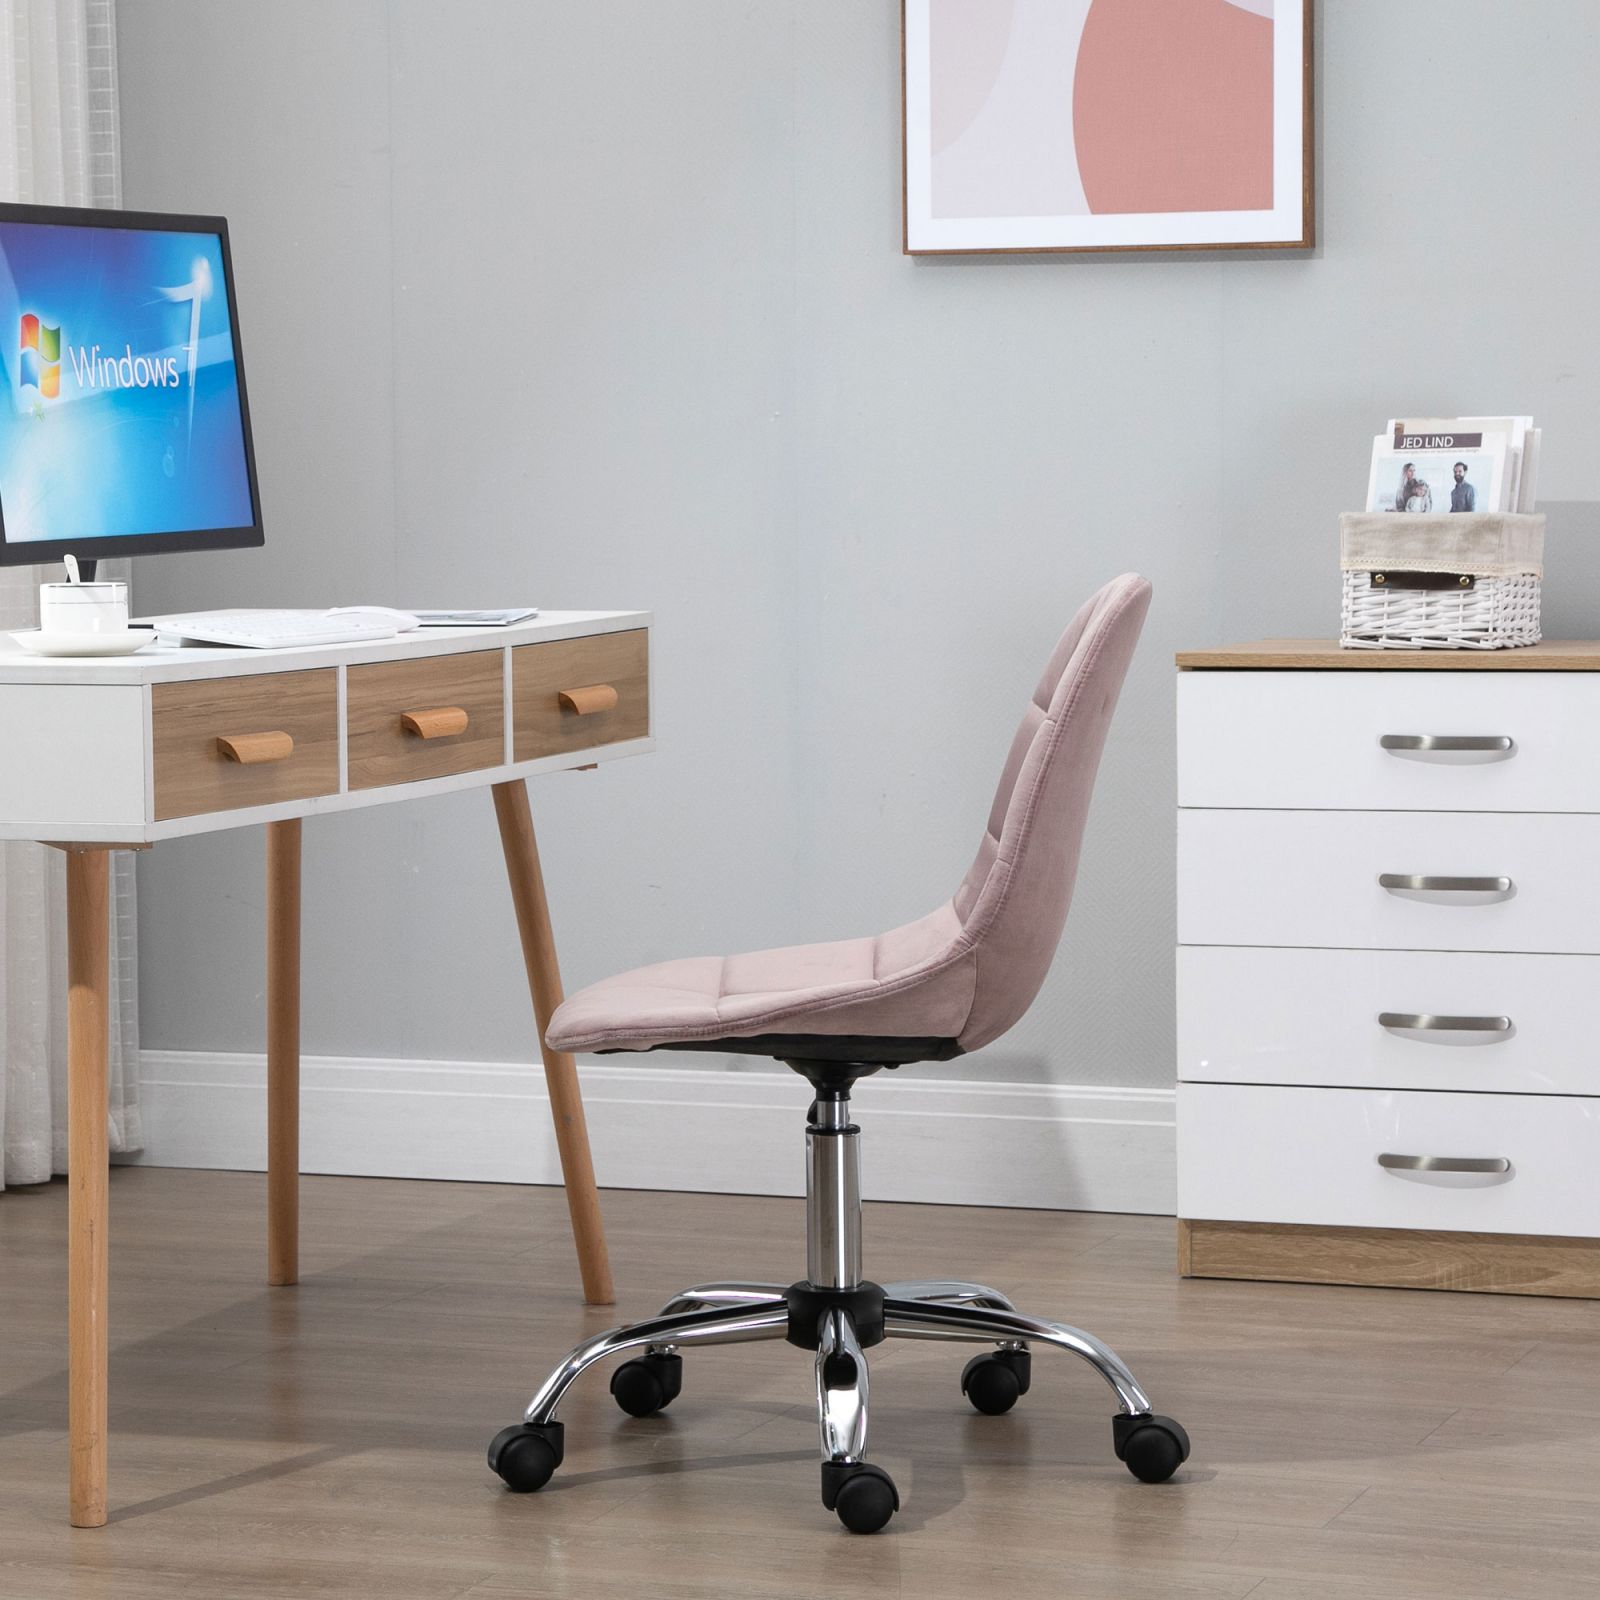 https://caldaiemurali.it/cdn/shop/products/immagine-2-easycomfort-easycomfort-sedia-girevole-per-scrivania-ufficio-ergonomica-regolabile-rosa-ean-8054144137575.jpg?v=1695905831